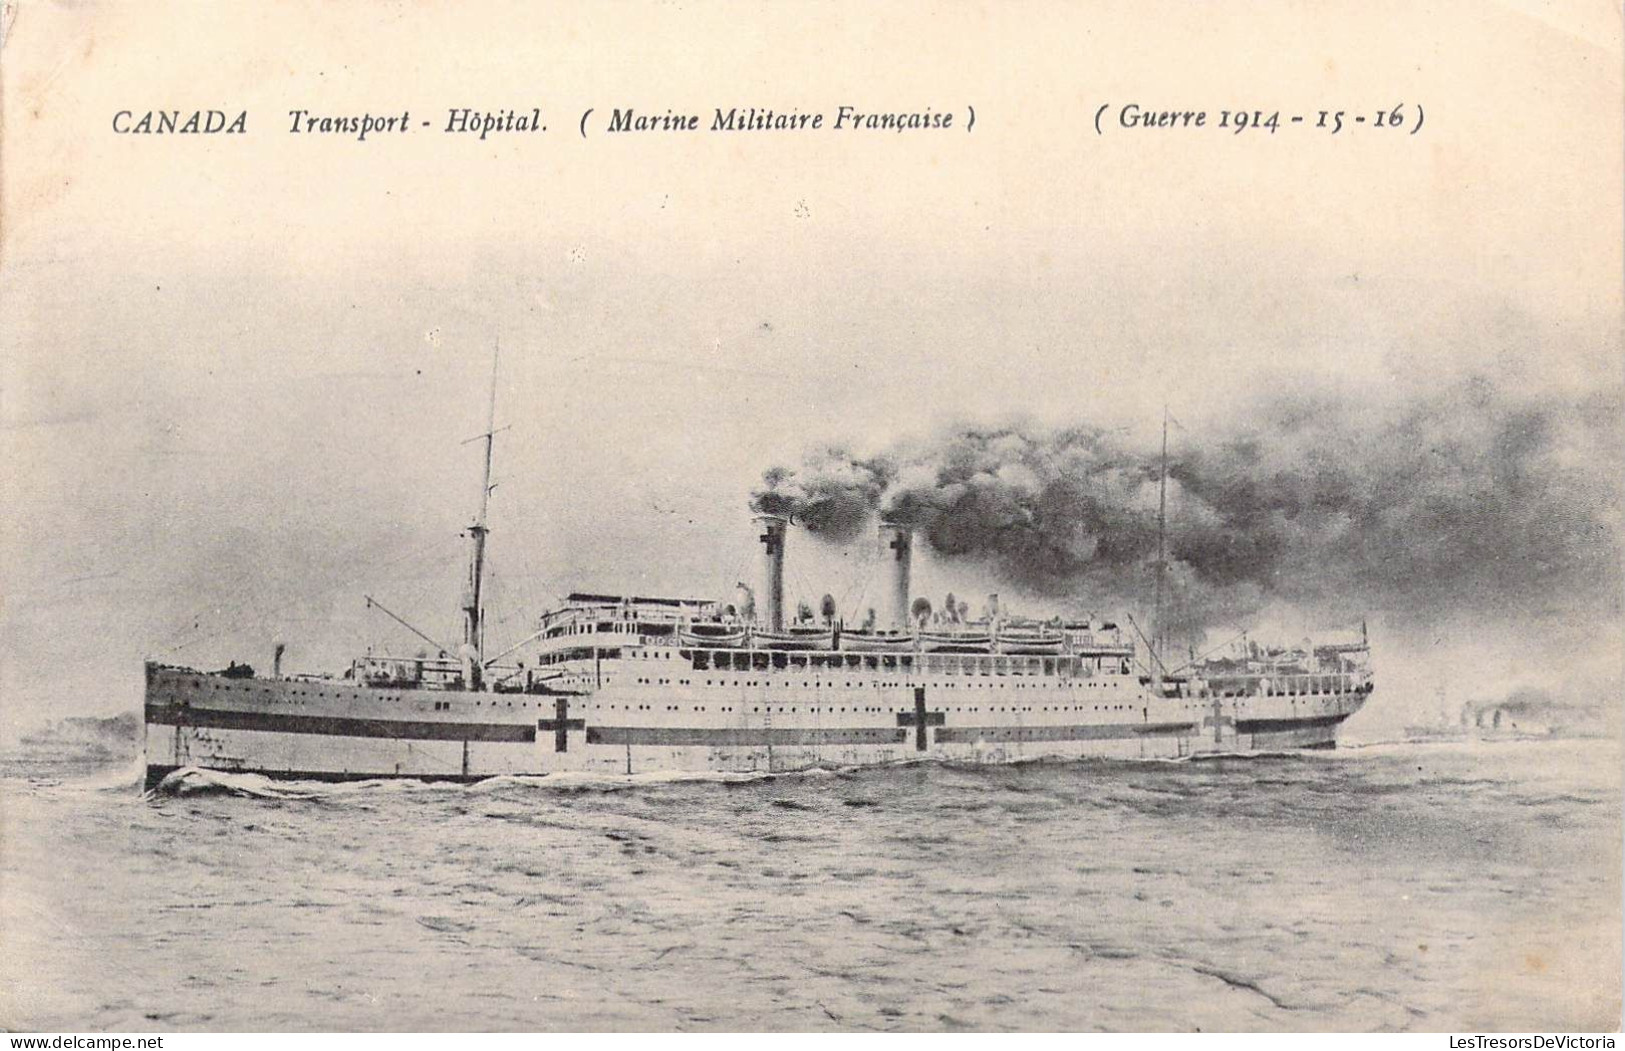 Militaria - Canada - Transport Hopital - Marine Militaire Française - Guerre 14/15/16 - Carte Postale Ancienne - Matériel